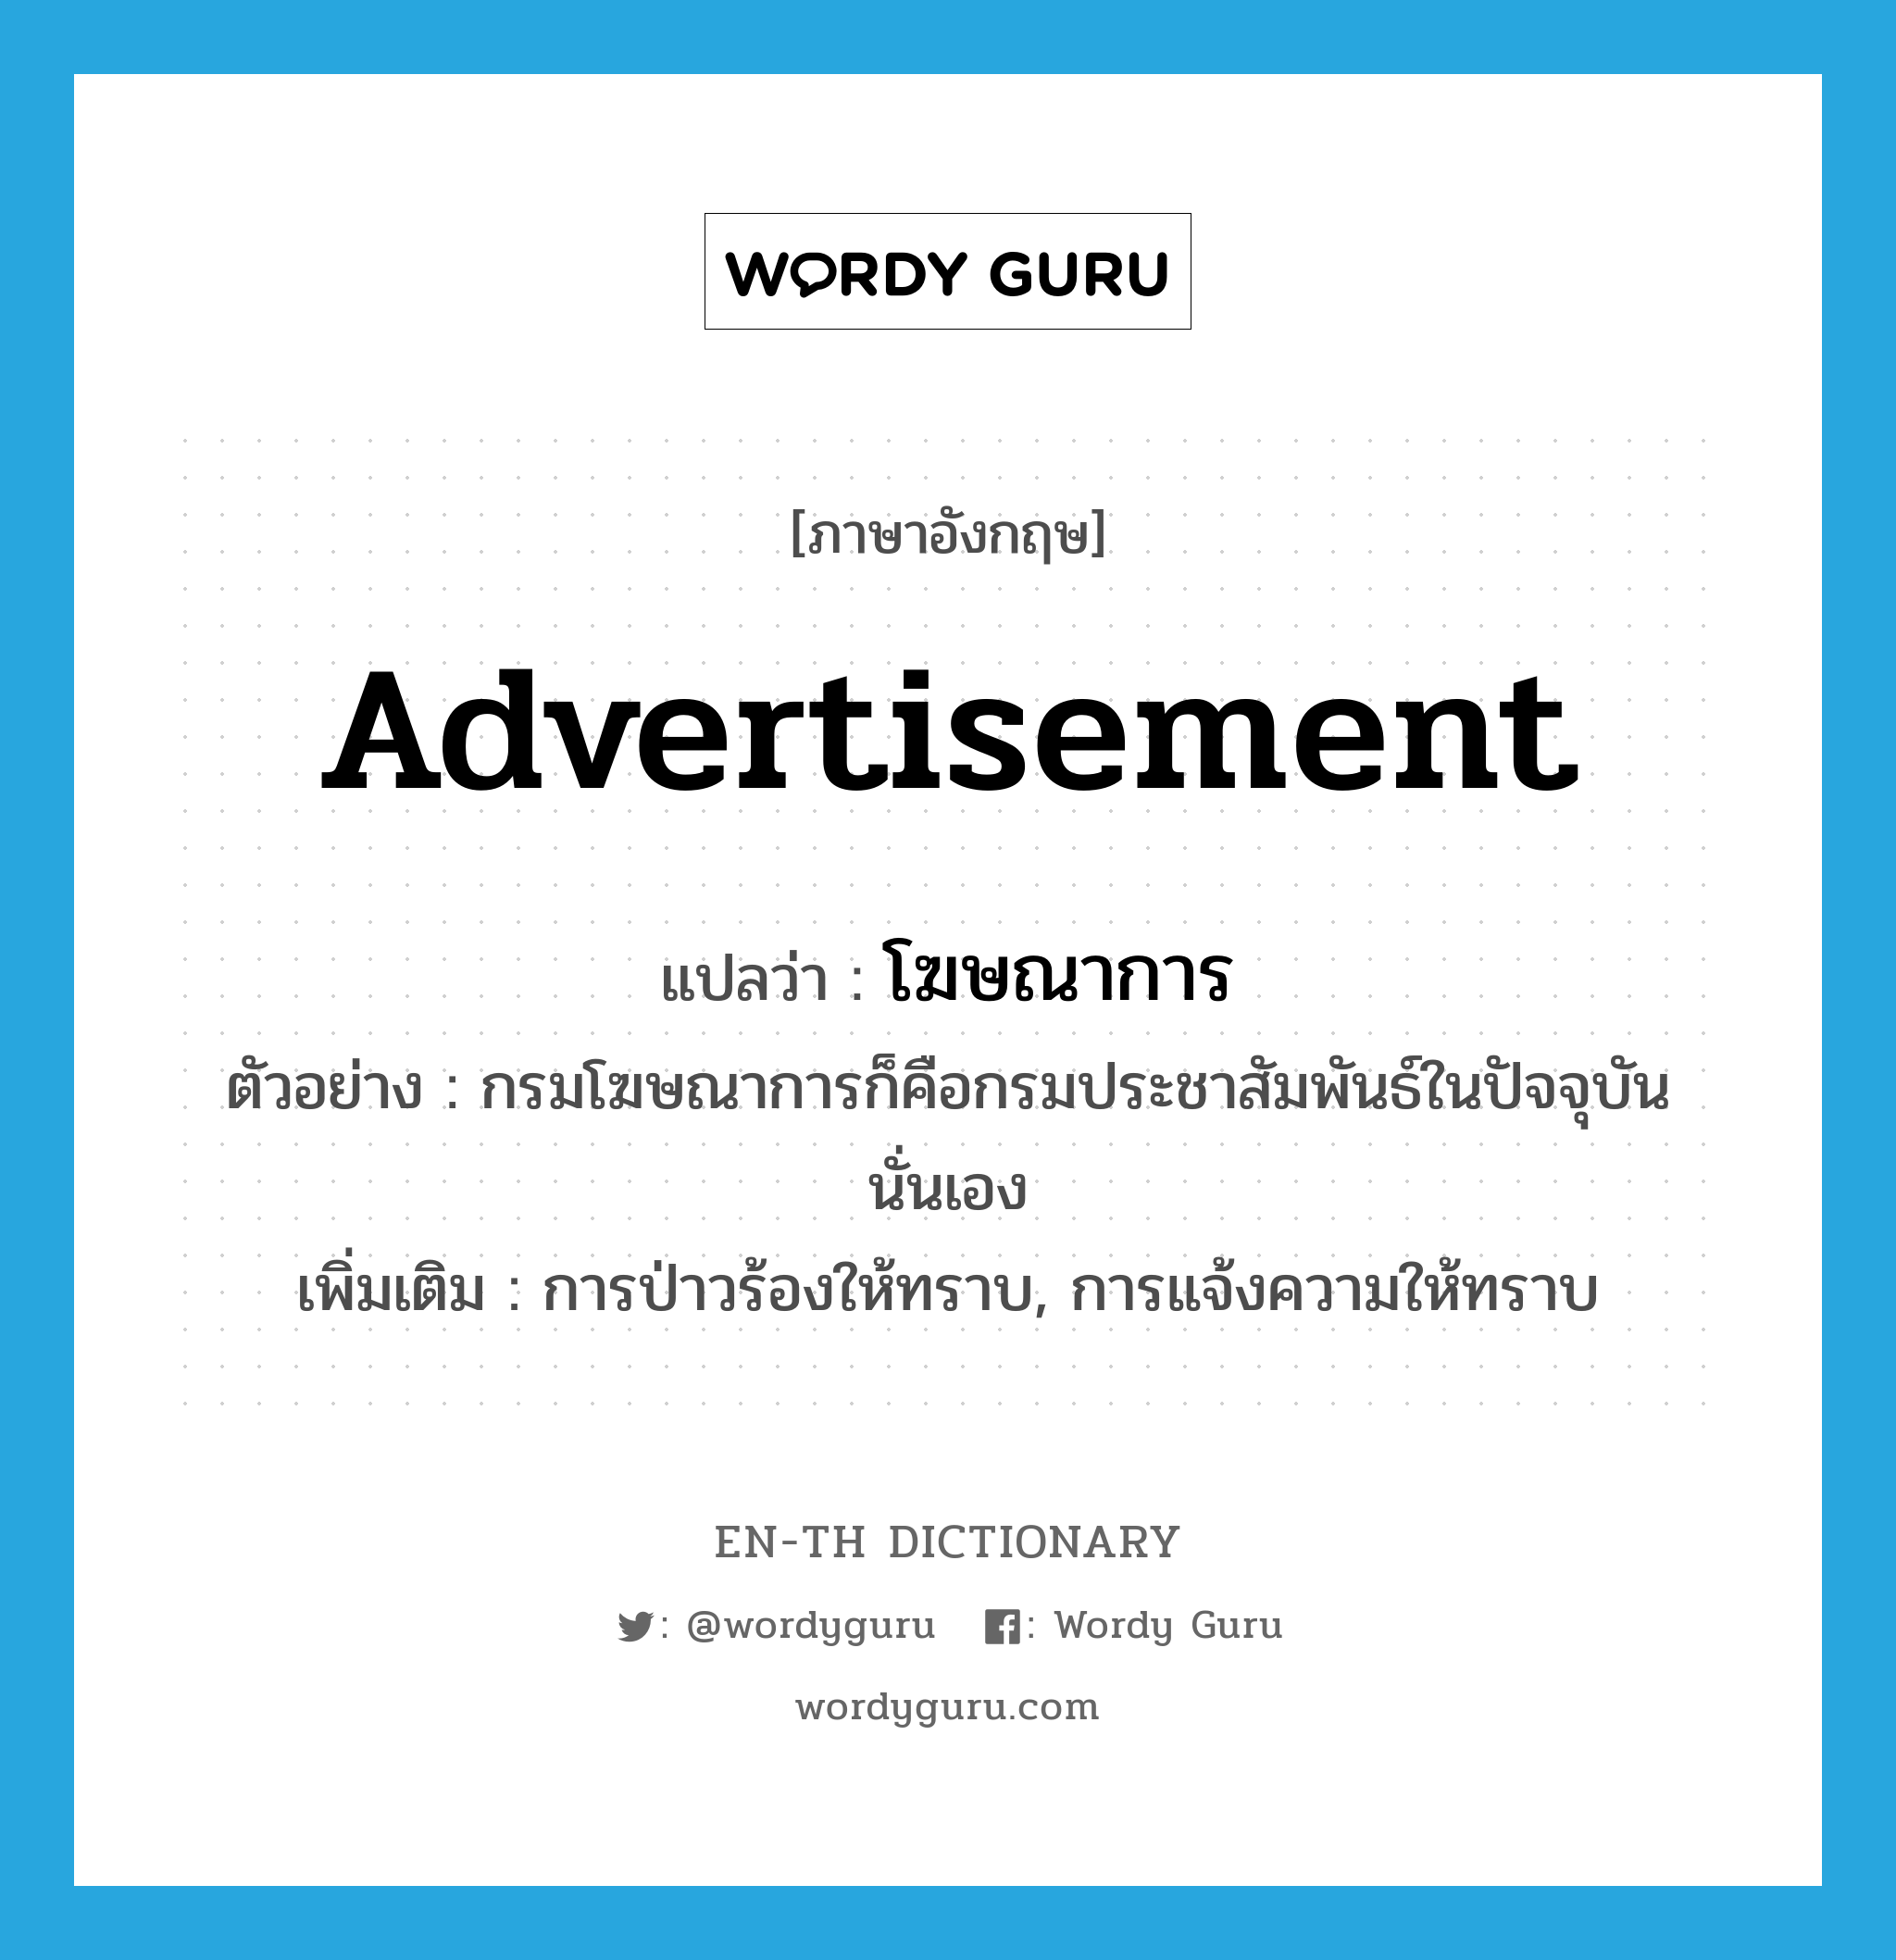 advertisement แปลว่า?, คำศัพท์ภาษาอังกฤษ advertisement แปลว่า โฆษณาการ ประเภท N ตัวอย่าง กรมโฆษณาการก็คือกรมประชาสัมพันธ์ในปัจจุบันนั่นเอง เพิ่มเติม การป่าวร้องให้ทราบ, การแจ้งความให้ทราบ หมวด N